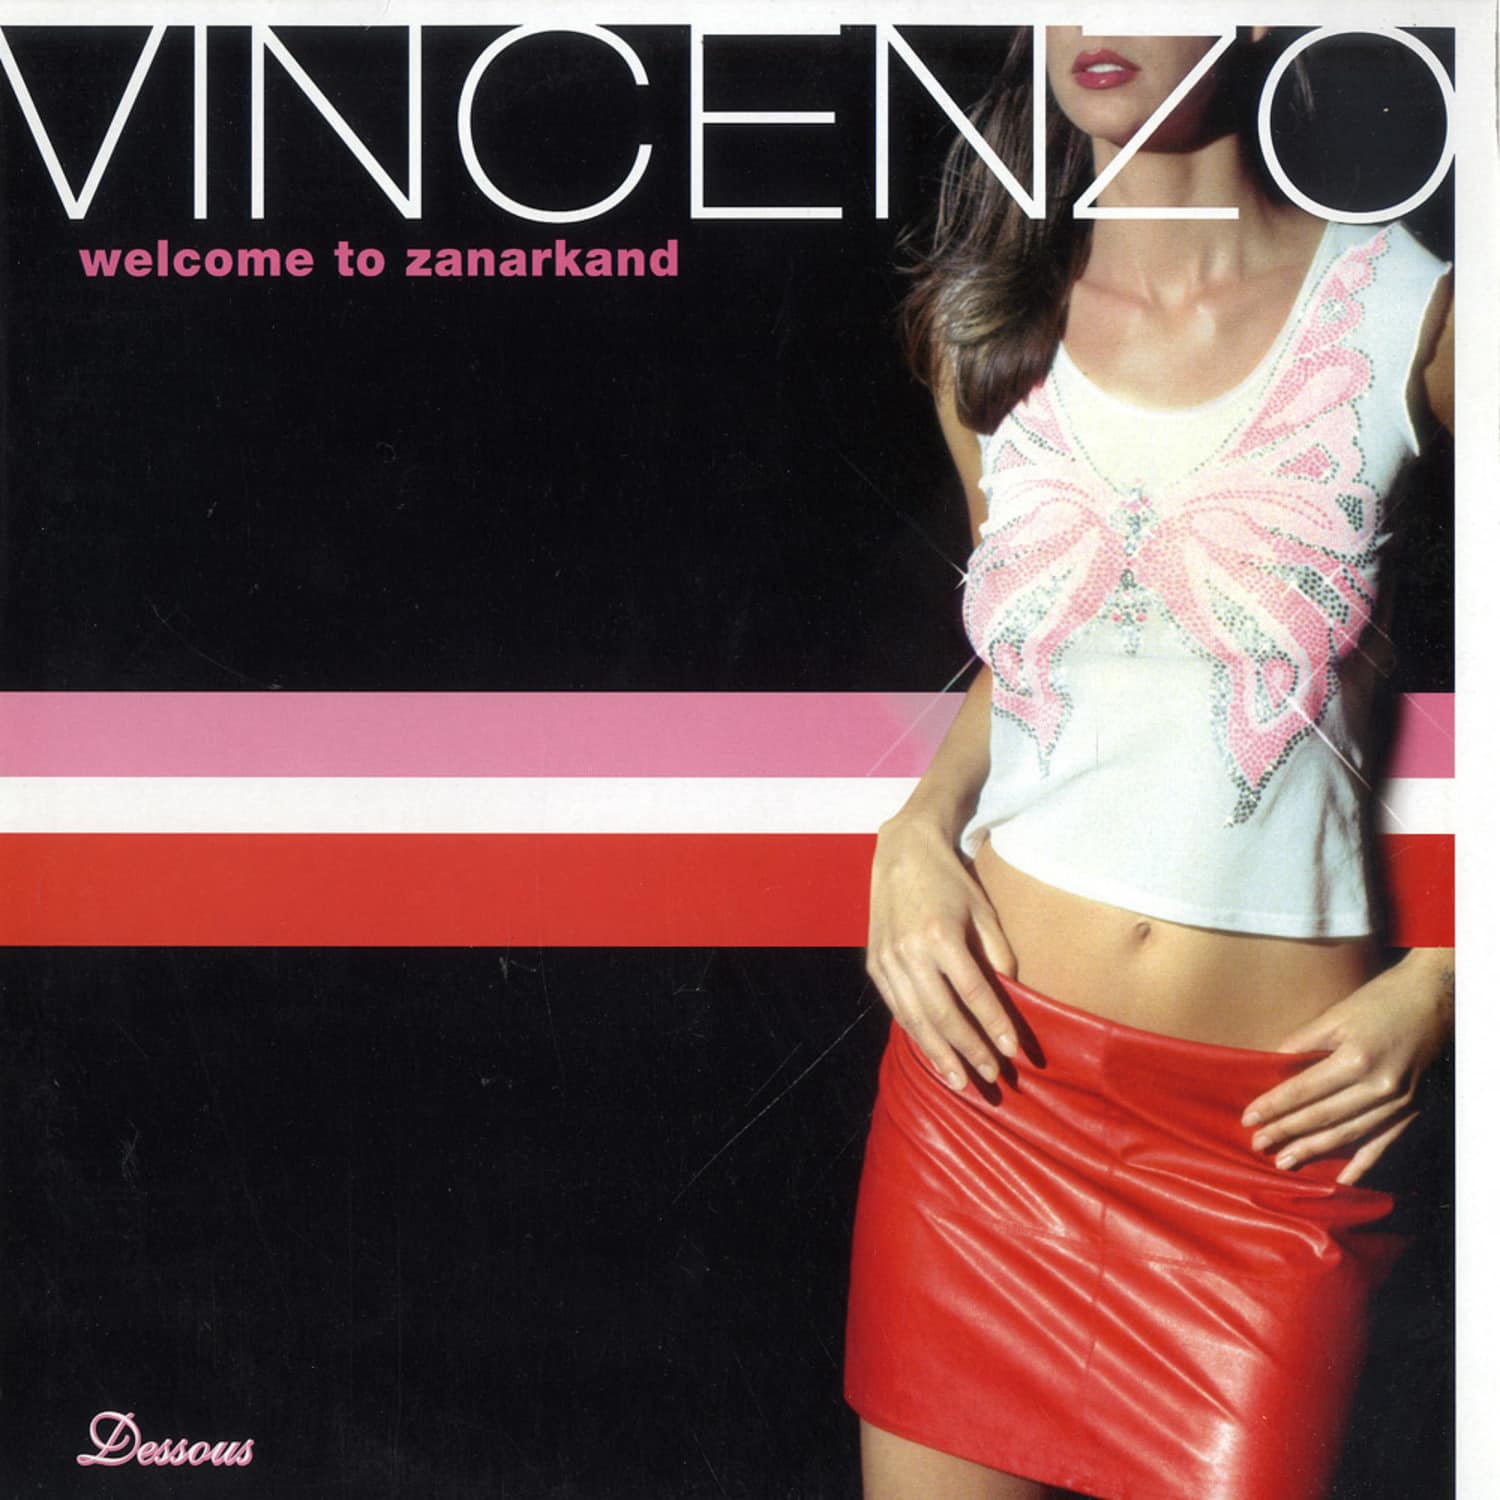 Vincenzo - WELCOME TO ZANARKAND 